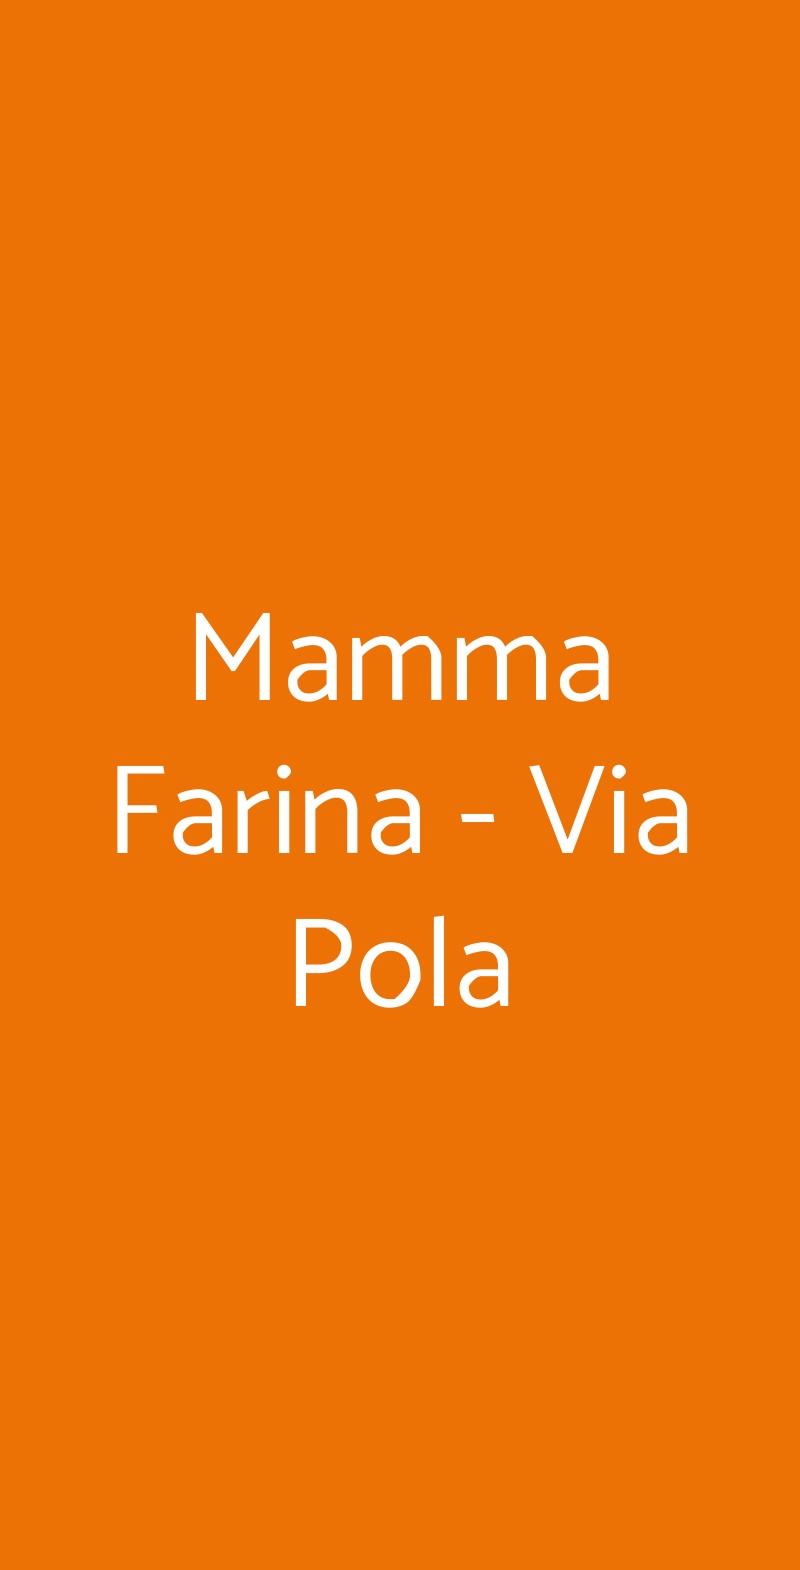 Mamma Farina - Via Pola Milano menù 1 pagina